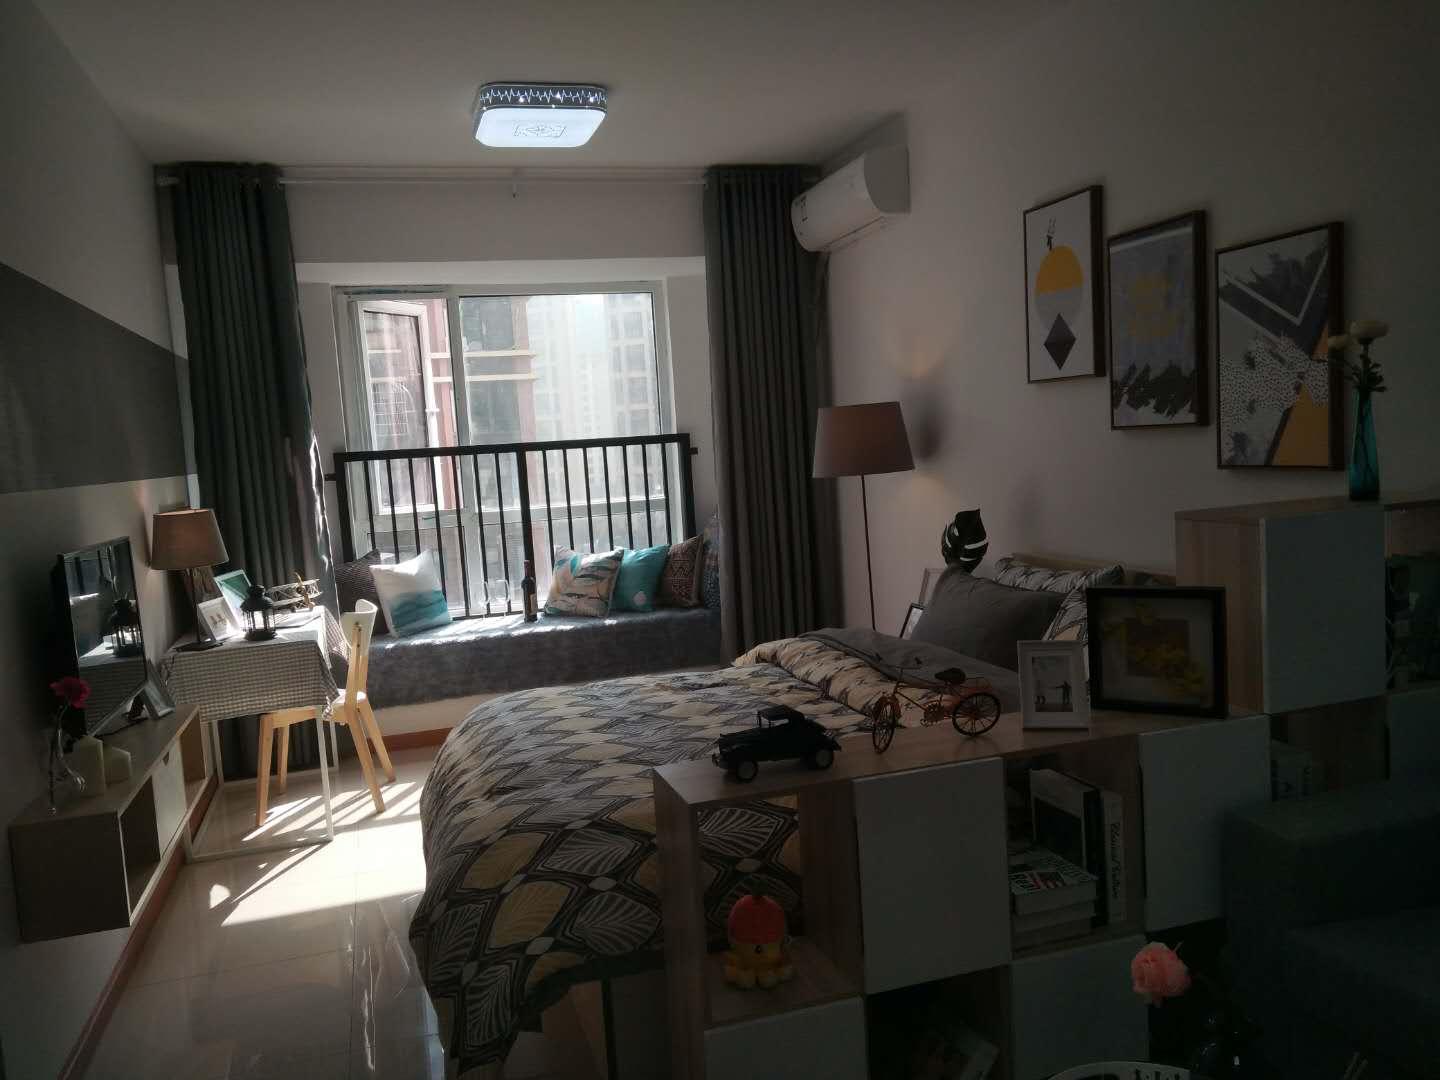 学生公寓外景图-广东酒店管理职业技术学院-招生就业网